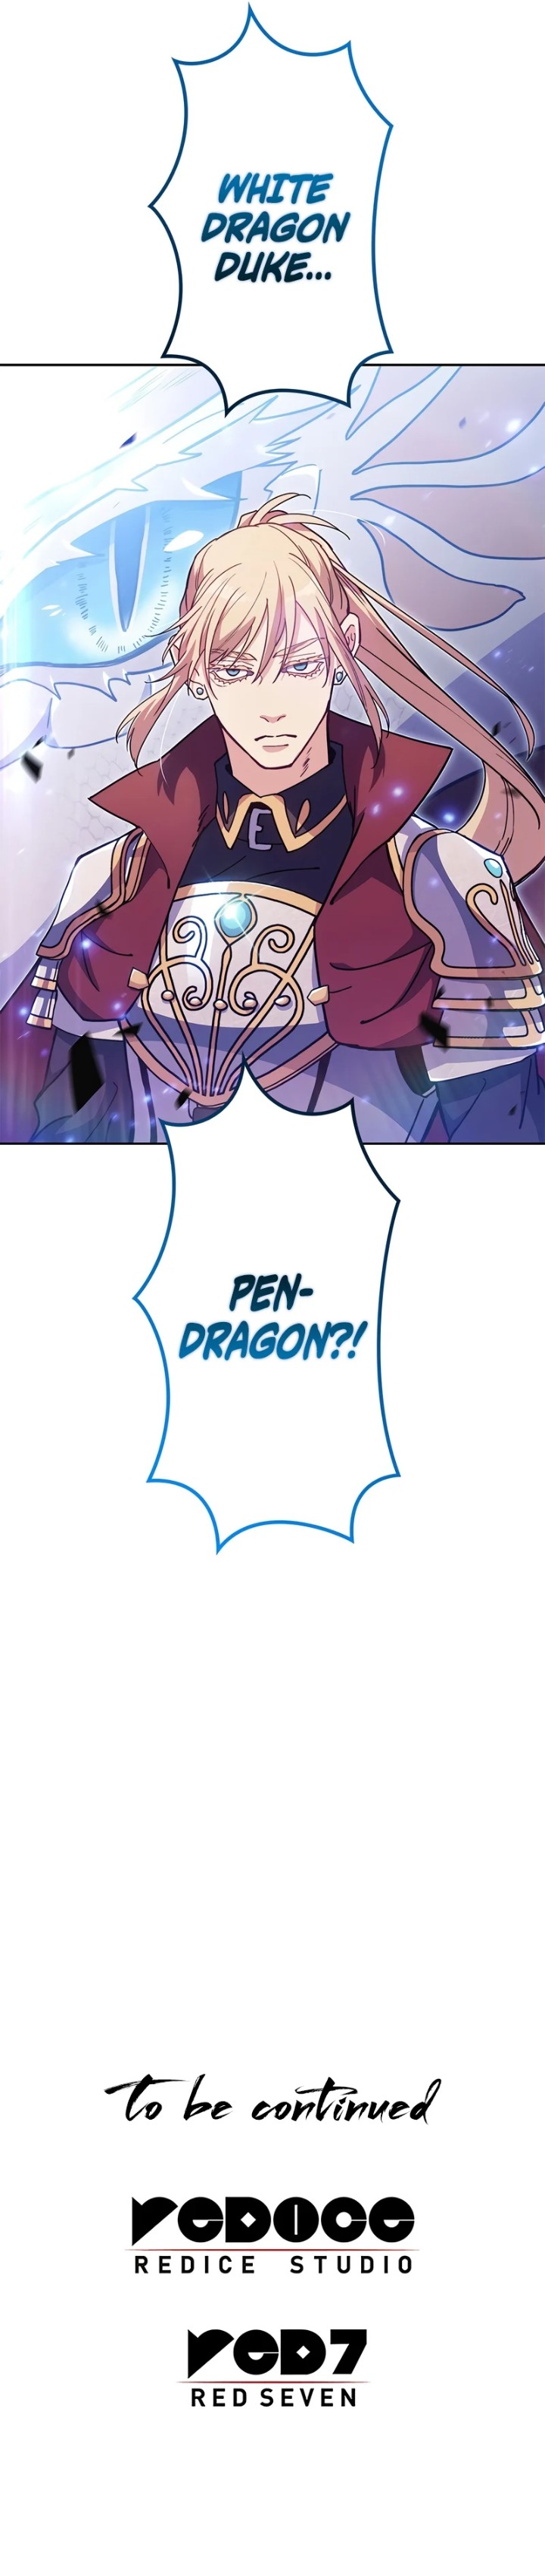 White Dragon Duke: Pendragon - Chapter 74 Page 12